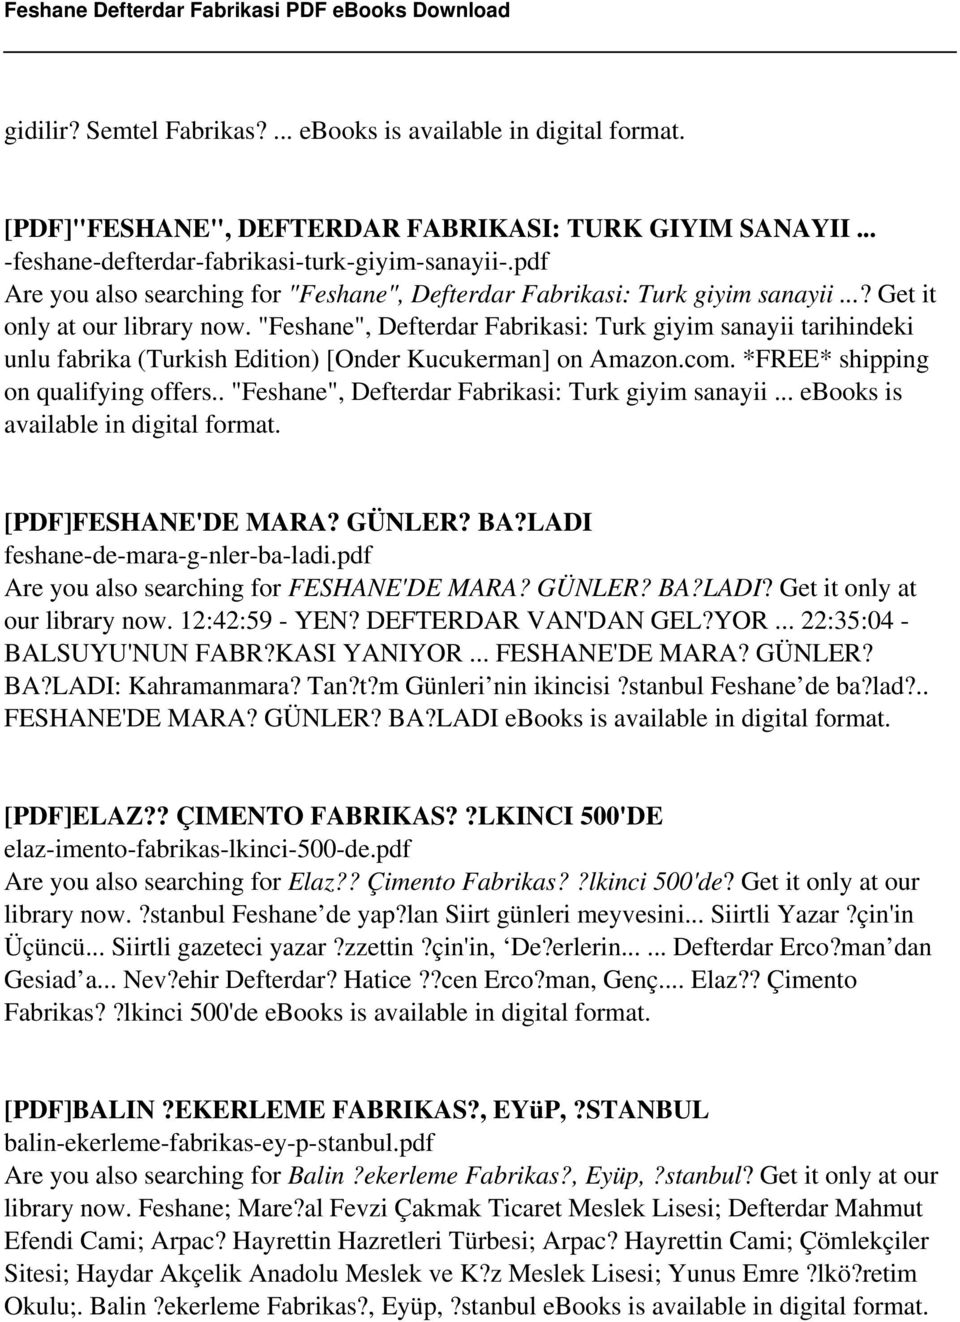 "Feshane", Defterdar Fabrikasi: Turk giyim sanayii tarihindeki unlu fabrika (Turkish Edition) [Onder Kucukerman] on Amazon.com. *FREE* shipping on qualifying offers.